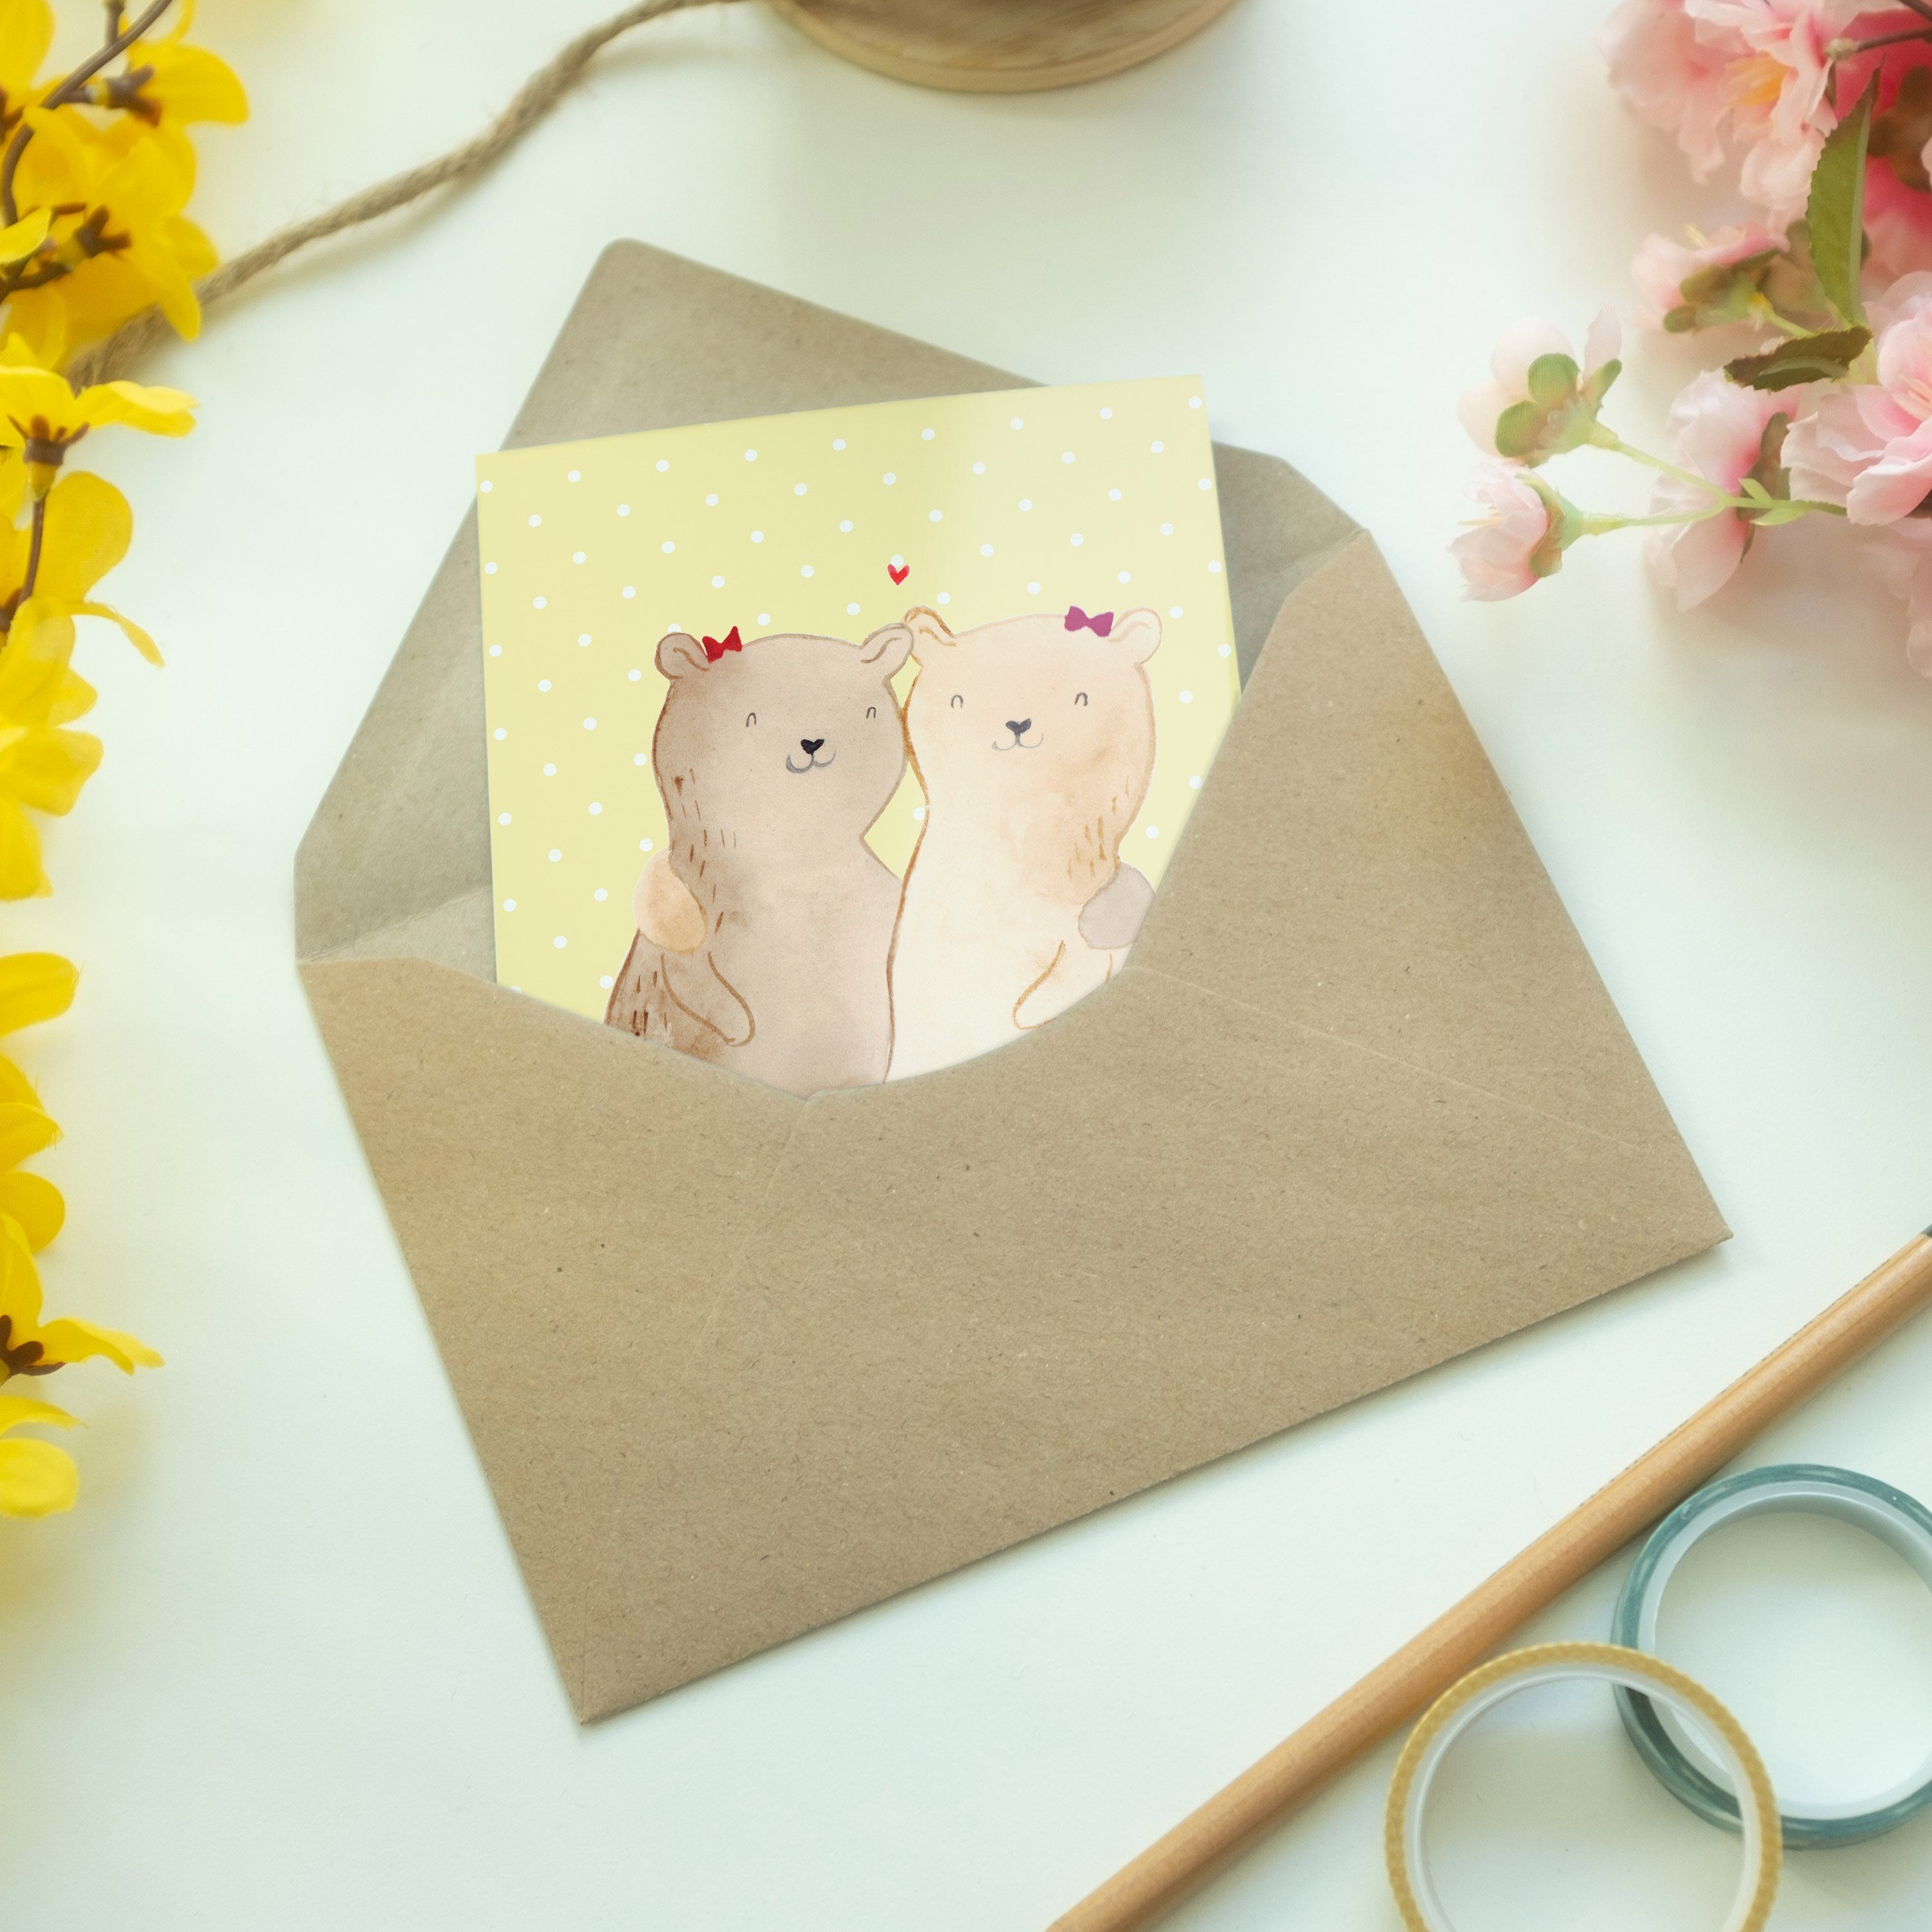 Schwestern Geschenk, Panda Mr. Mrs. - Pastell Klappkart Gelb - Bären & Hochzeitskarte, Grußkarte